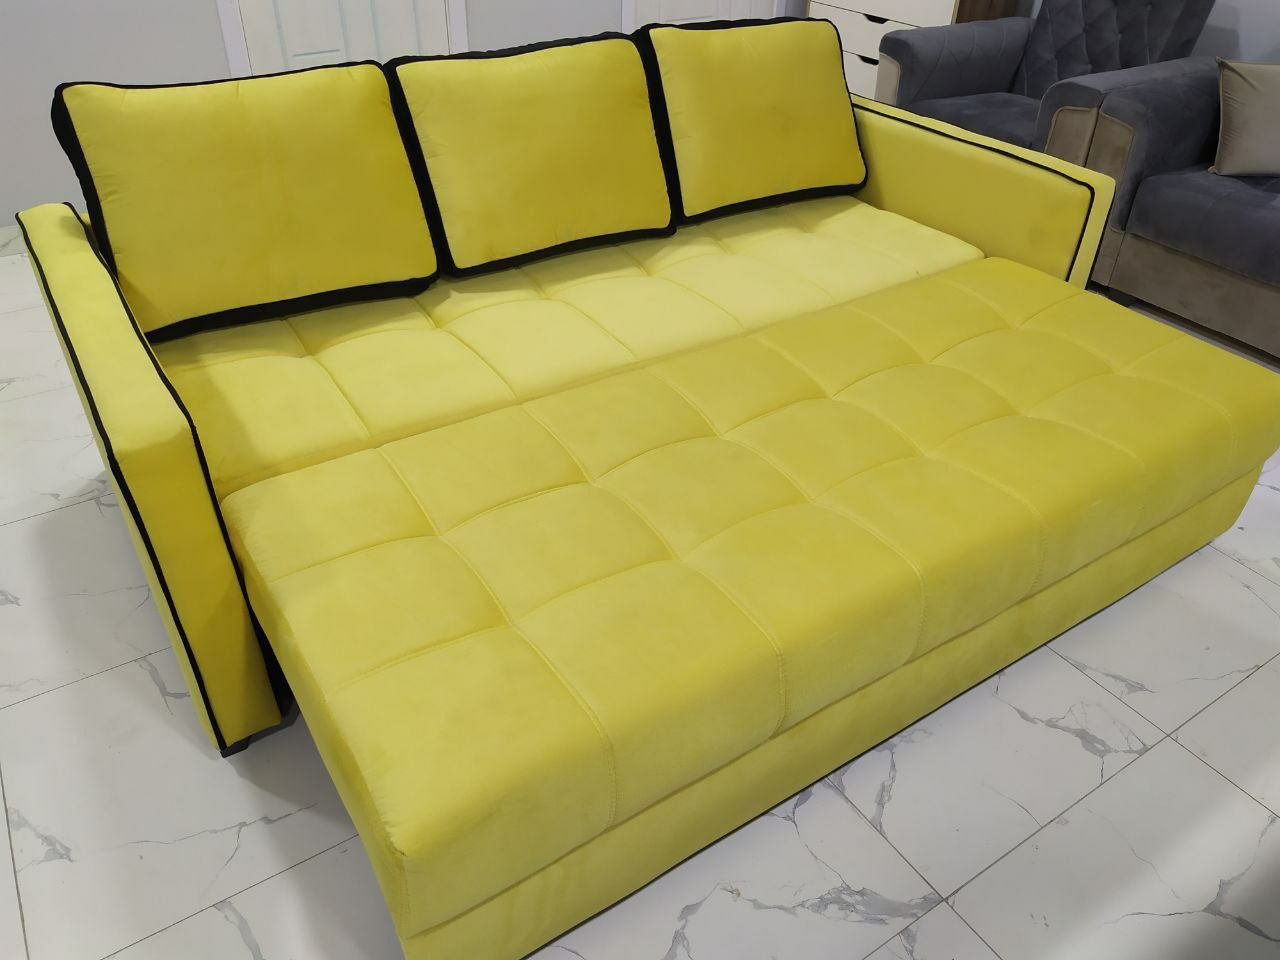 Комфортный, стильный, мягкий диван, подойдёт для вашего интерьера!!!